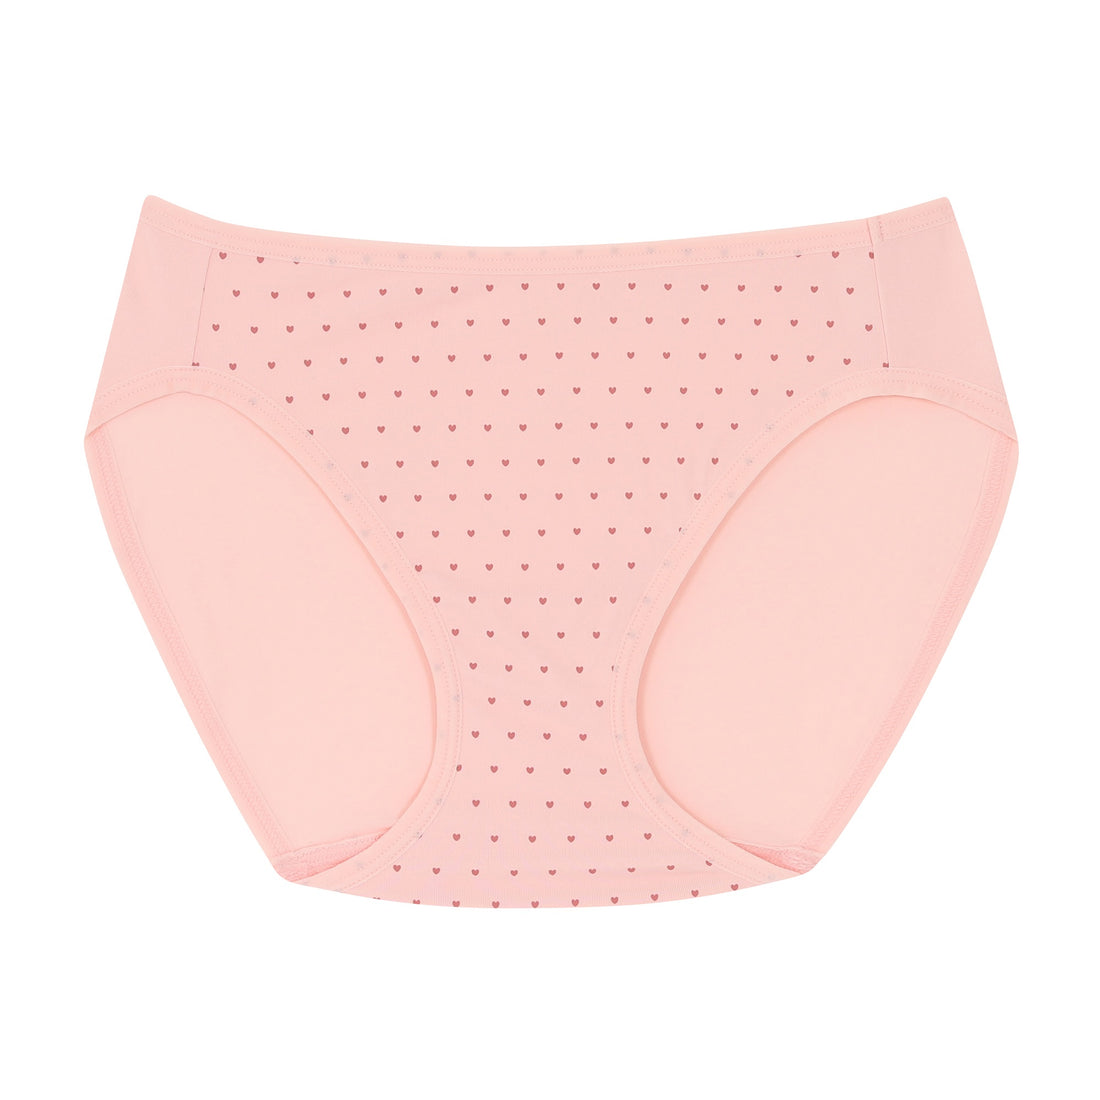 Wacoal Panty, bikini style underwear, model WU2C04, pink (OP)